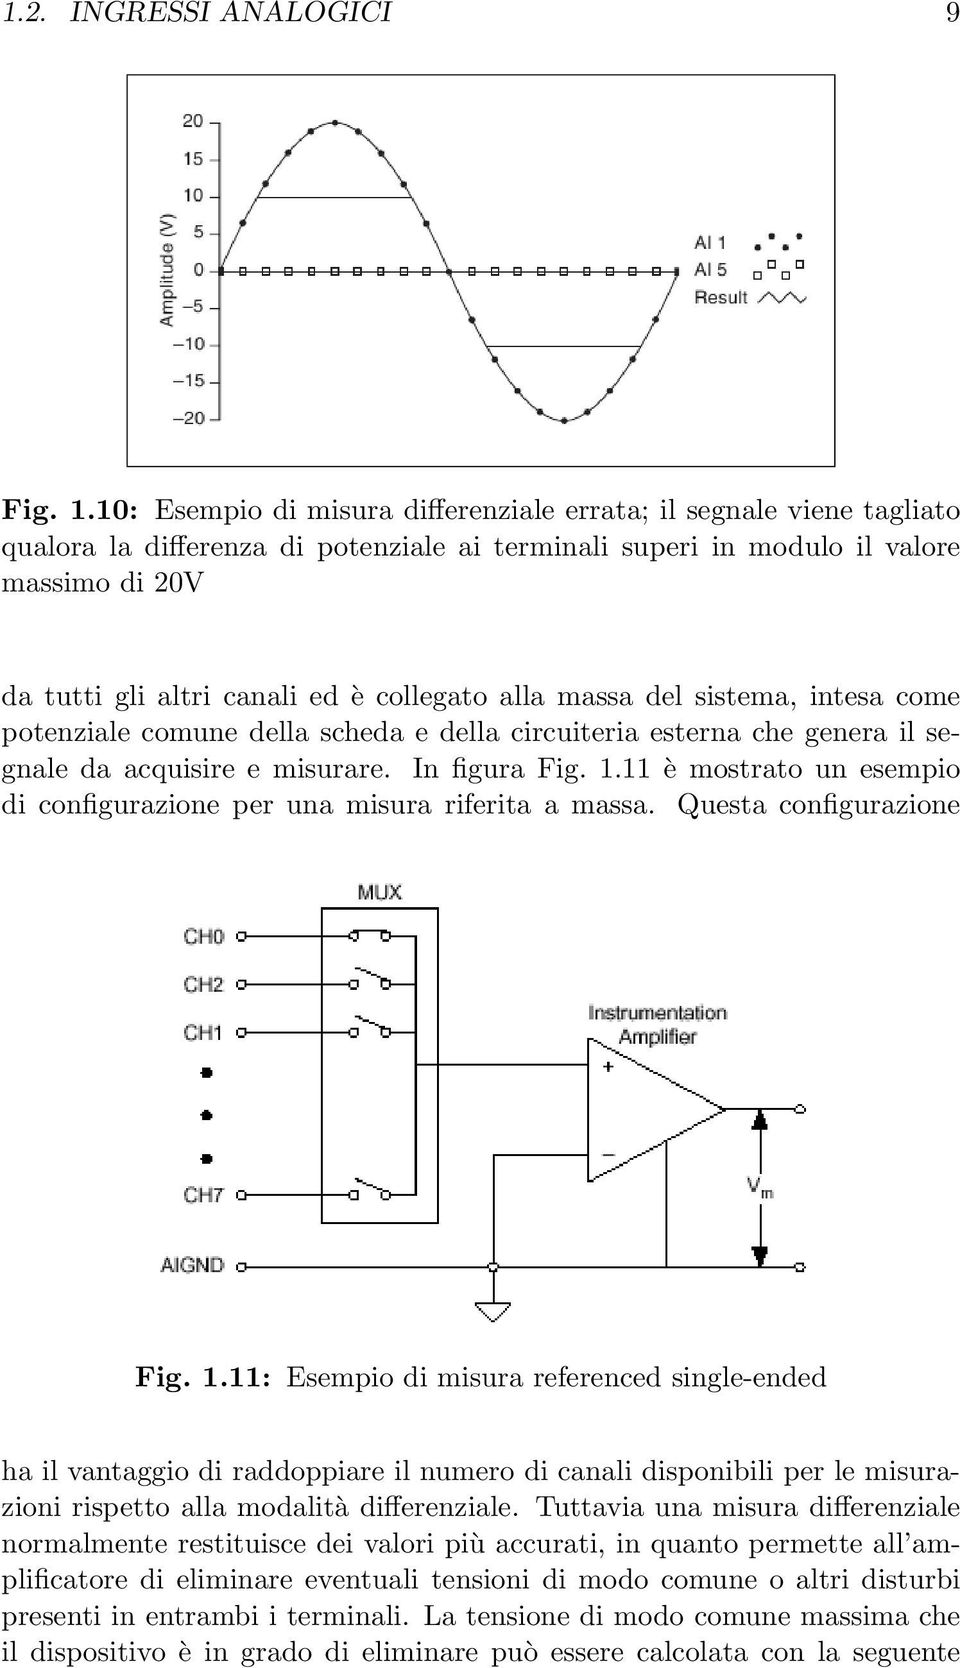 collegato alla massa del sistema, intesa come potenziale comune della scheda e della circuiteria esterna che genera il segnale da acquisire e misurare. In figura Fig. 1.